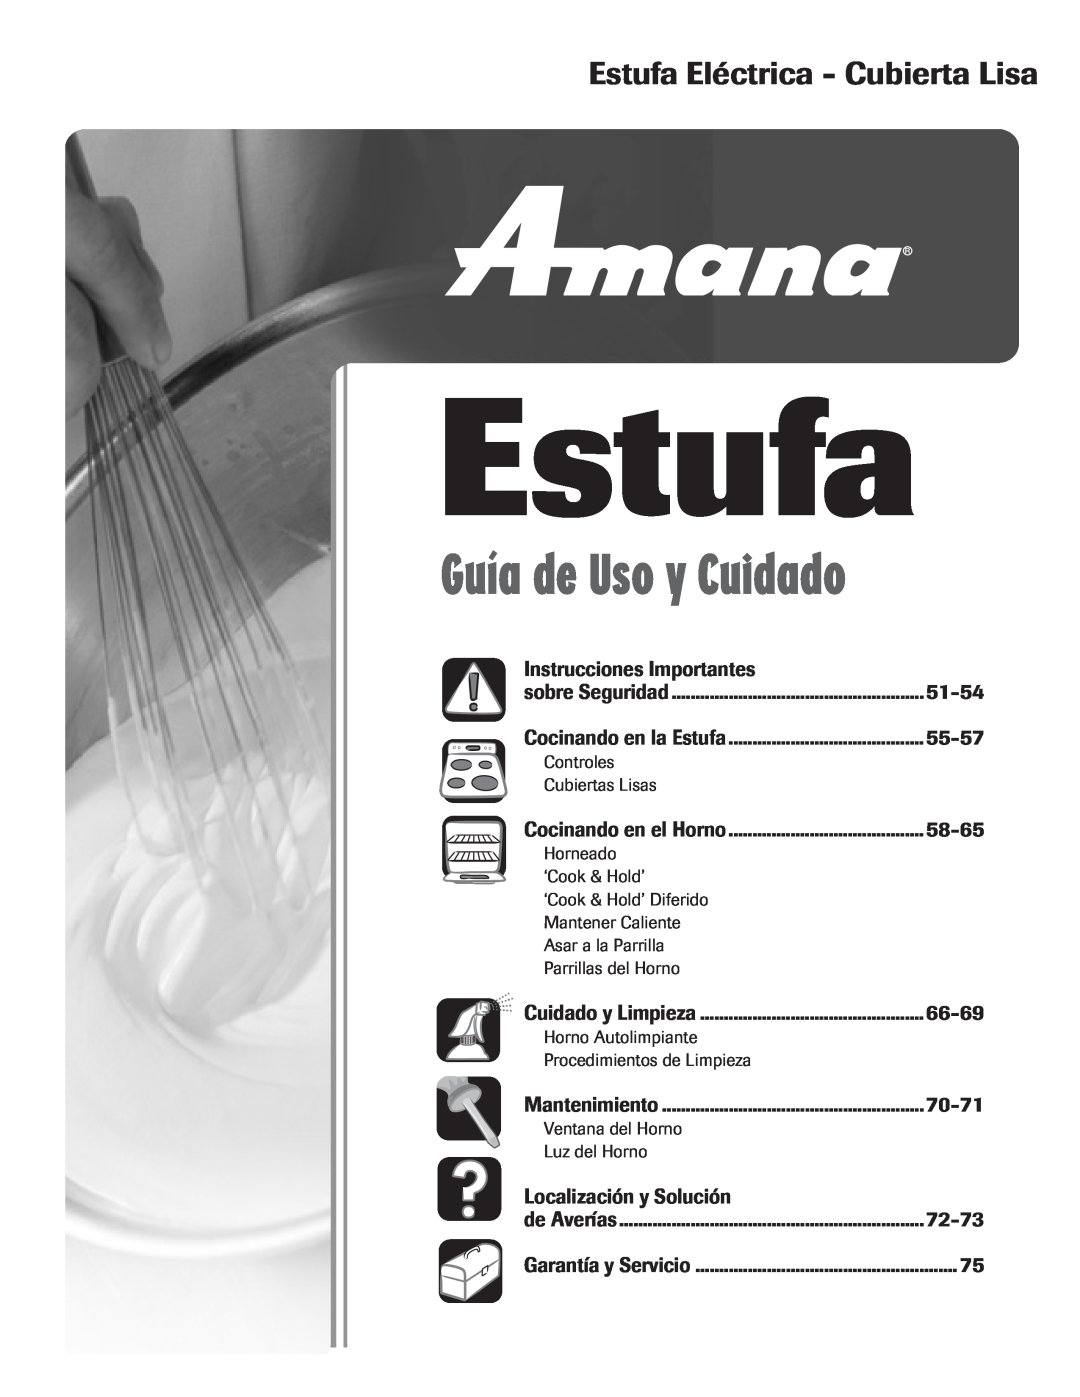 Amana Smoothtop Guía de Uso y Cuidado, Estufa Eléctrica - Cubierta Lisa, Instrucciones Importantes, 51-54, 55-57 